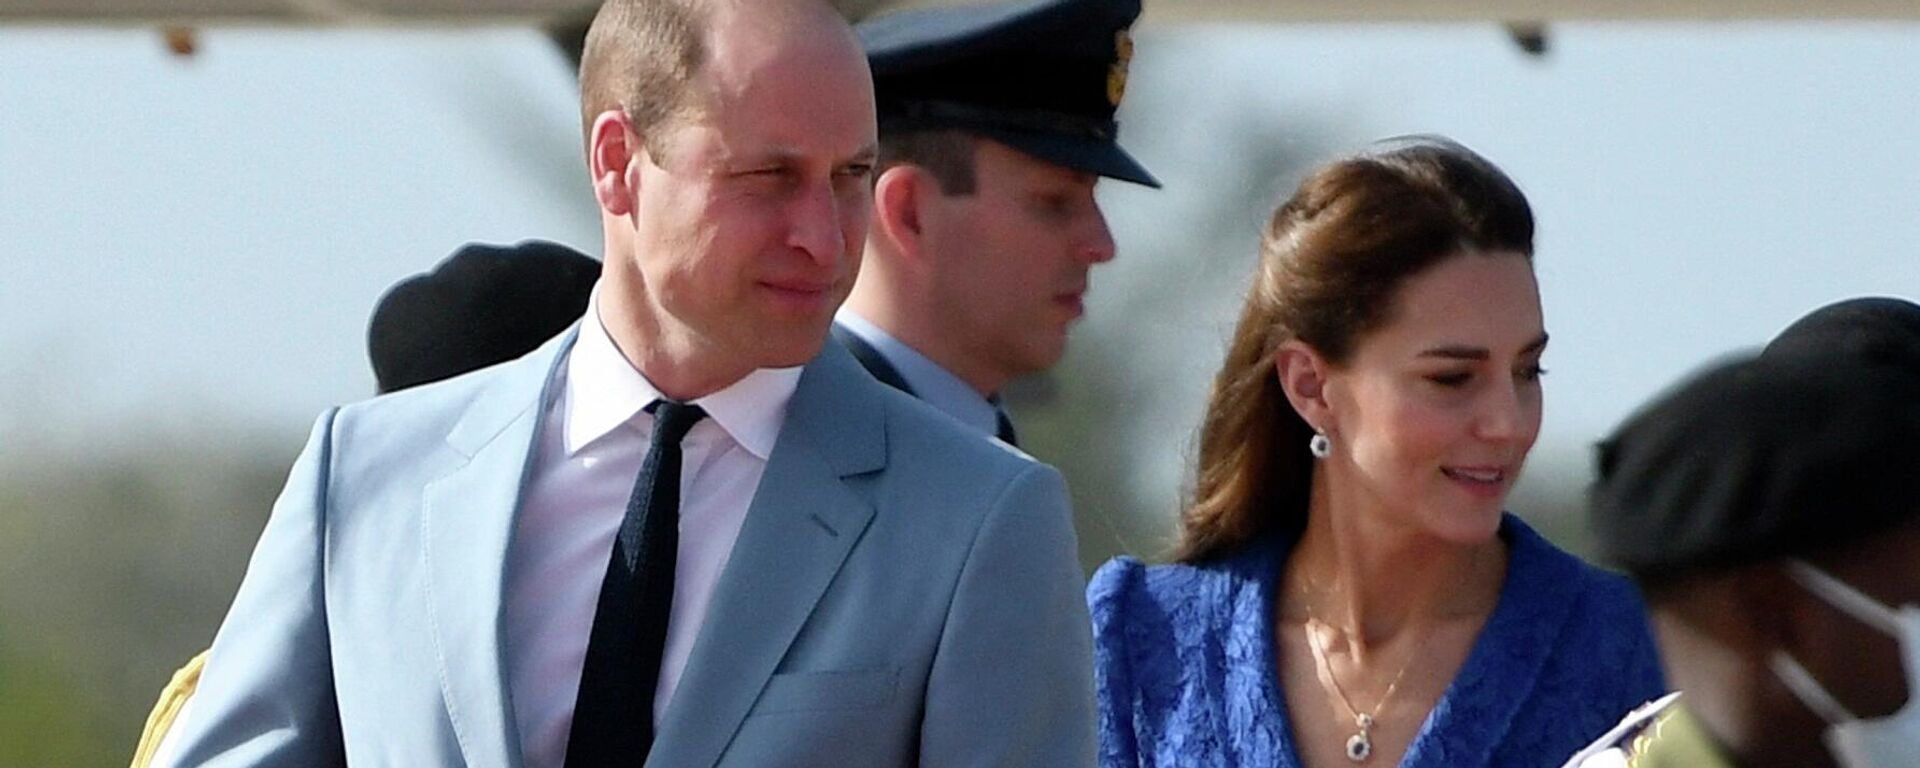 الأمير البريطاني وليام وزوجته كيت ميدلتون يصلان إلى مطار بليز سيتي الدولي في 19 مارس/ آذار 2022، في بداية جولتهما الكاريبية - سبوتنيك عربي, 1920, 23.03.2022